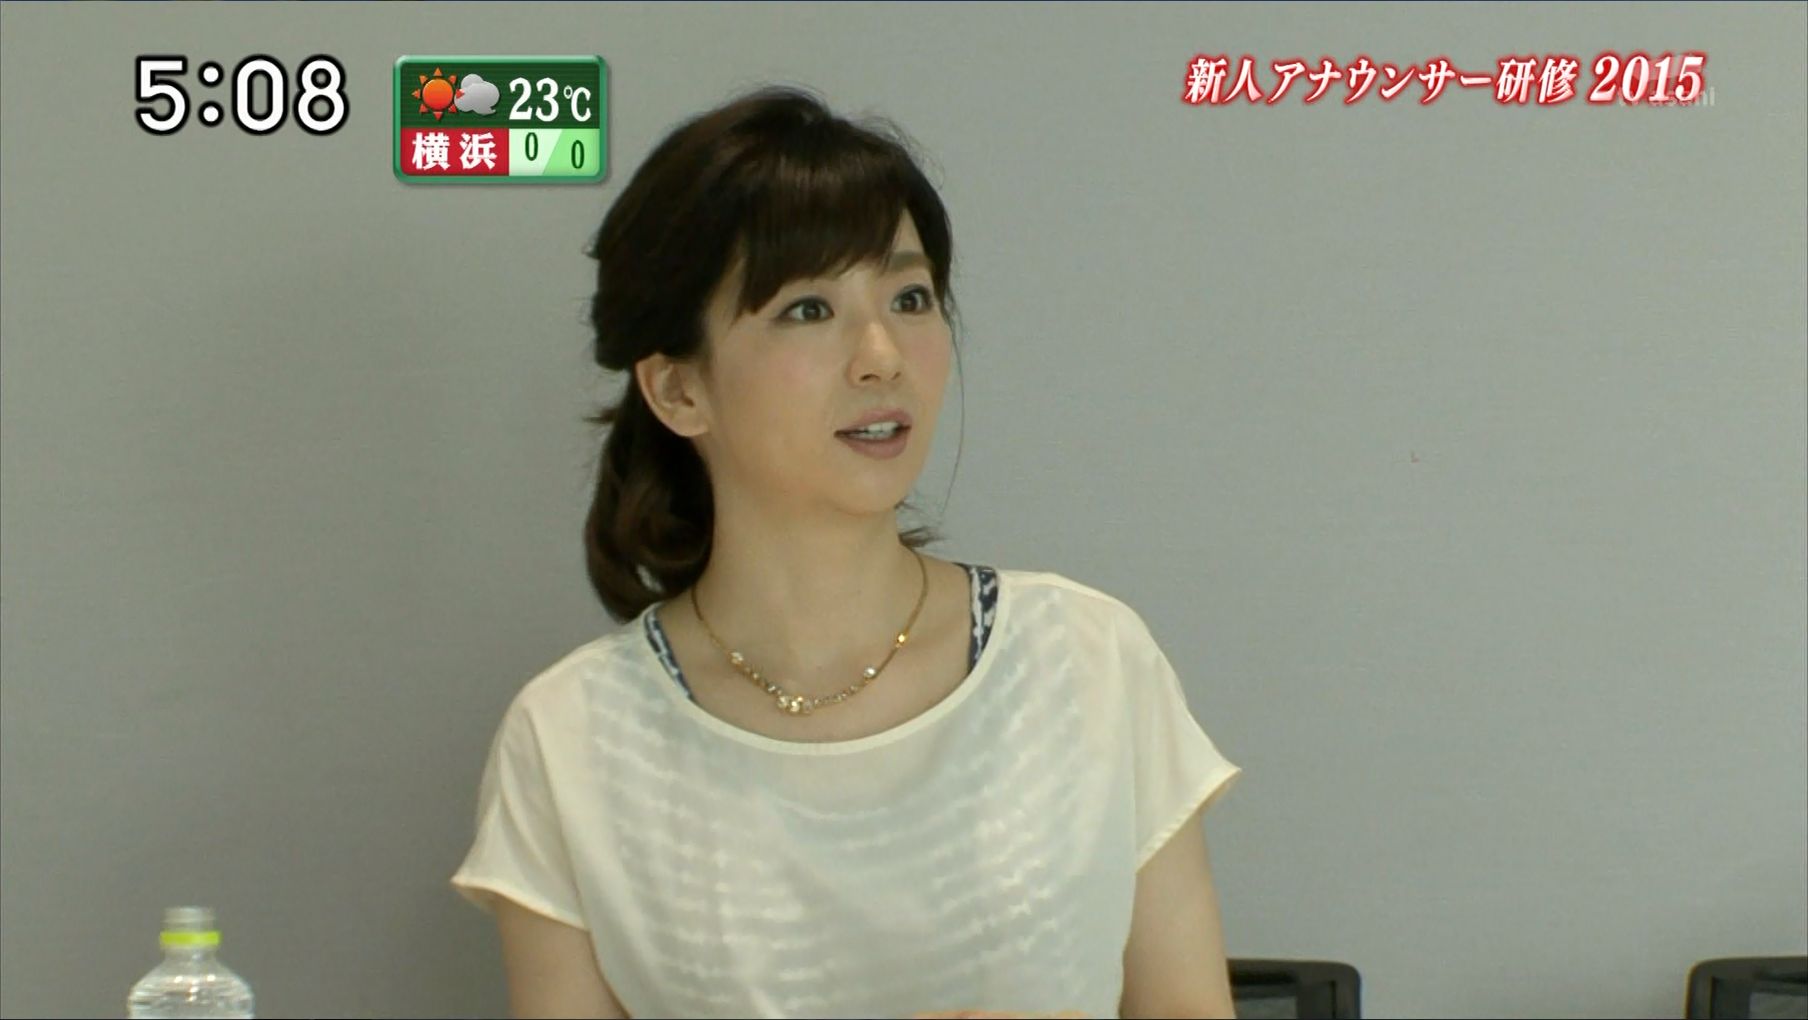 松尾由美子 はい テレビ朝日です 15 10 18 女子アナキャプでも貼っておく Strategic Choice